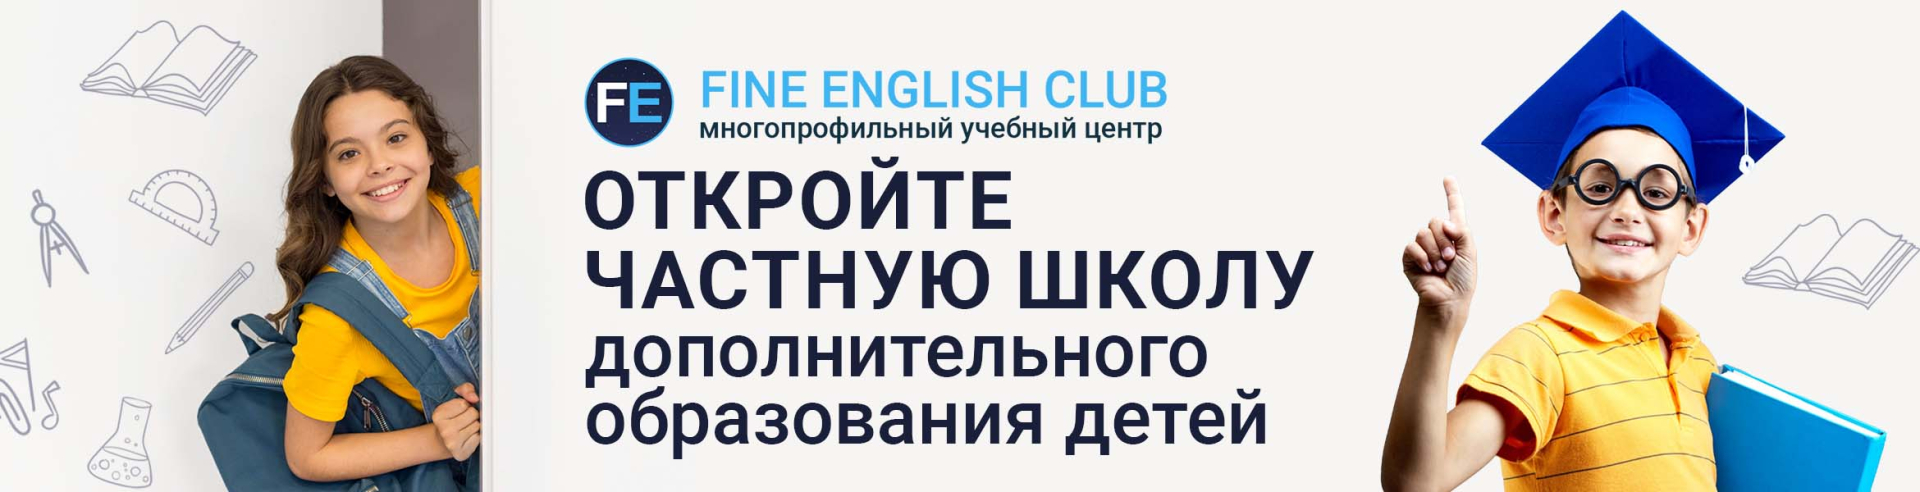 Франшиза образовательной школы Fine English Club